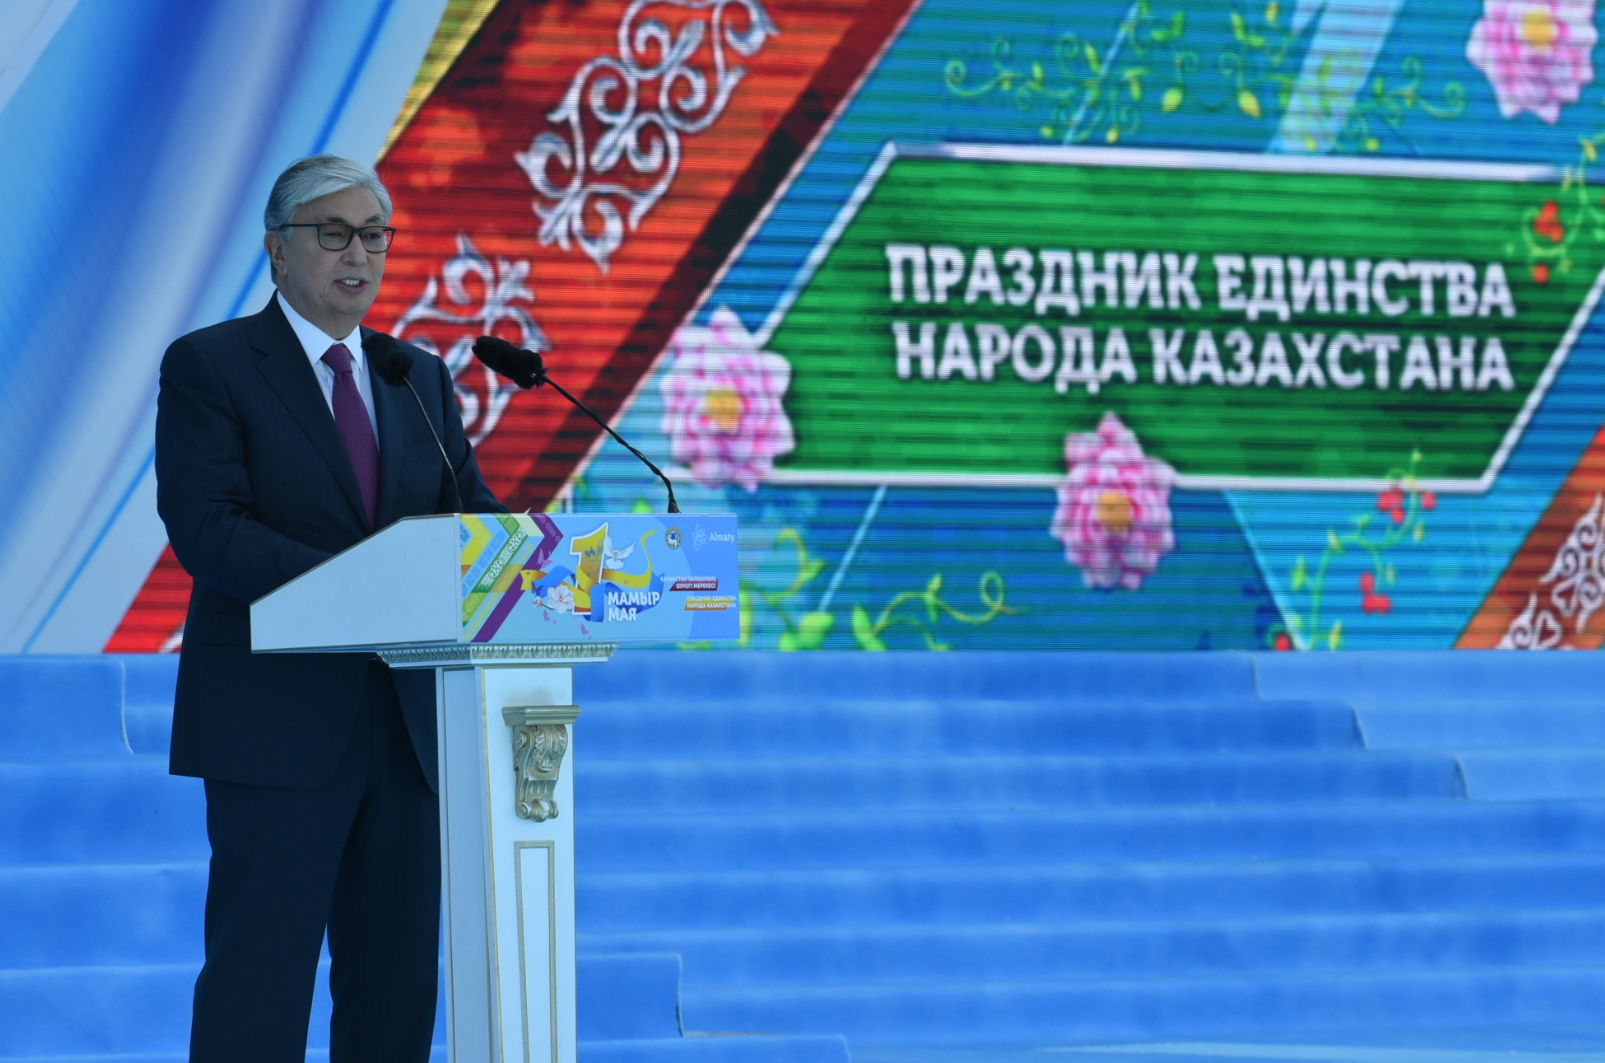  Президент Касым-Жомарт Токаев принимает участие в массовых гуляниях, посвященных Дню единства народа Казахстана